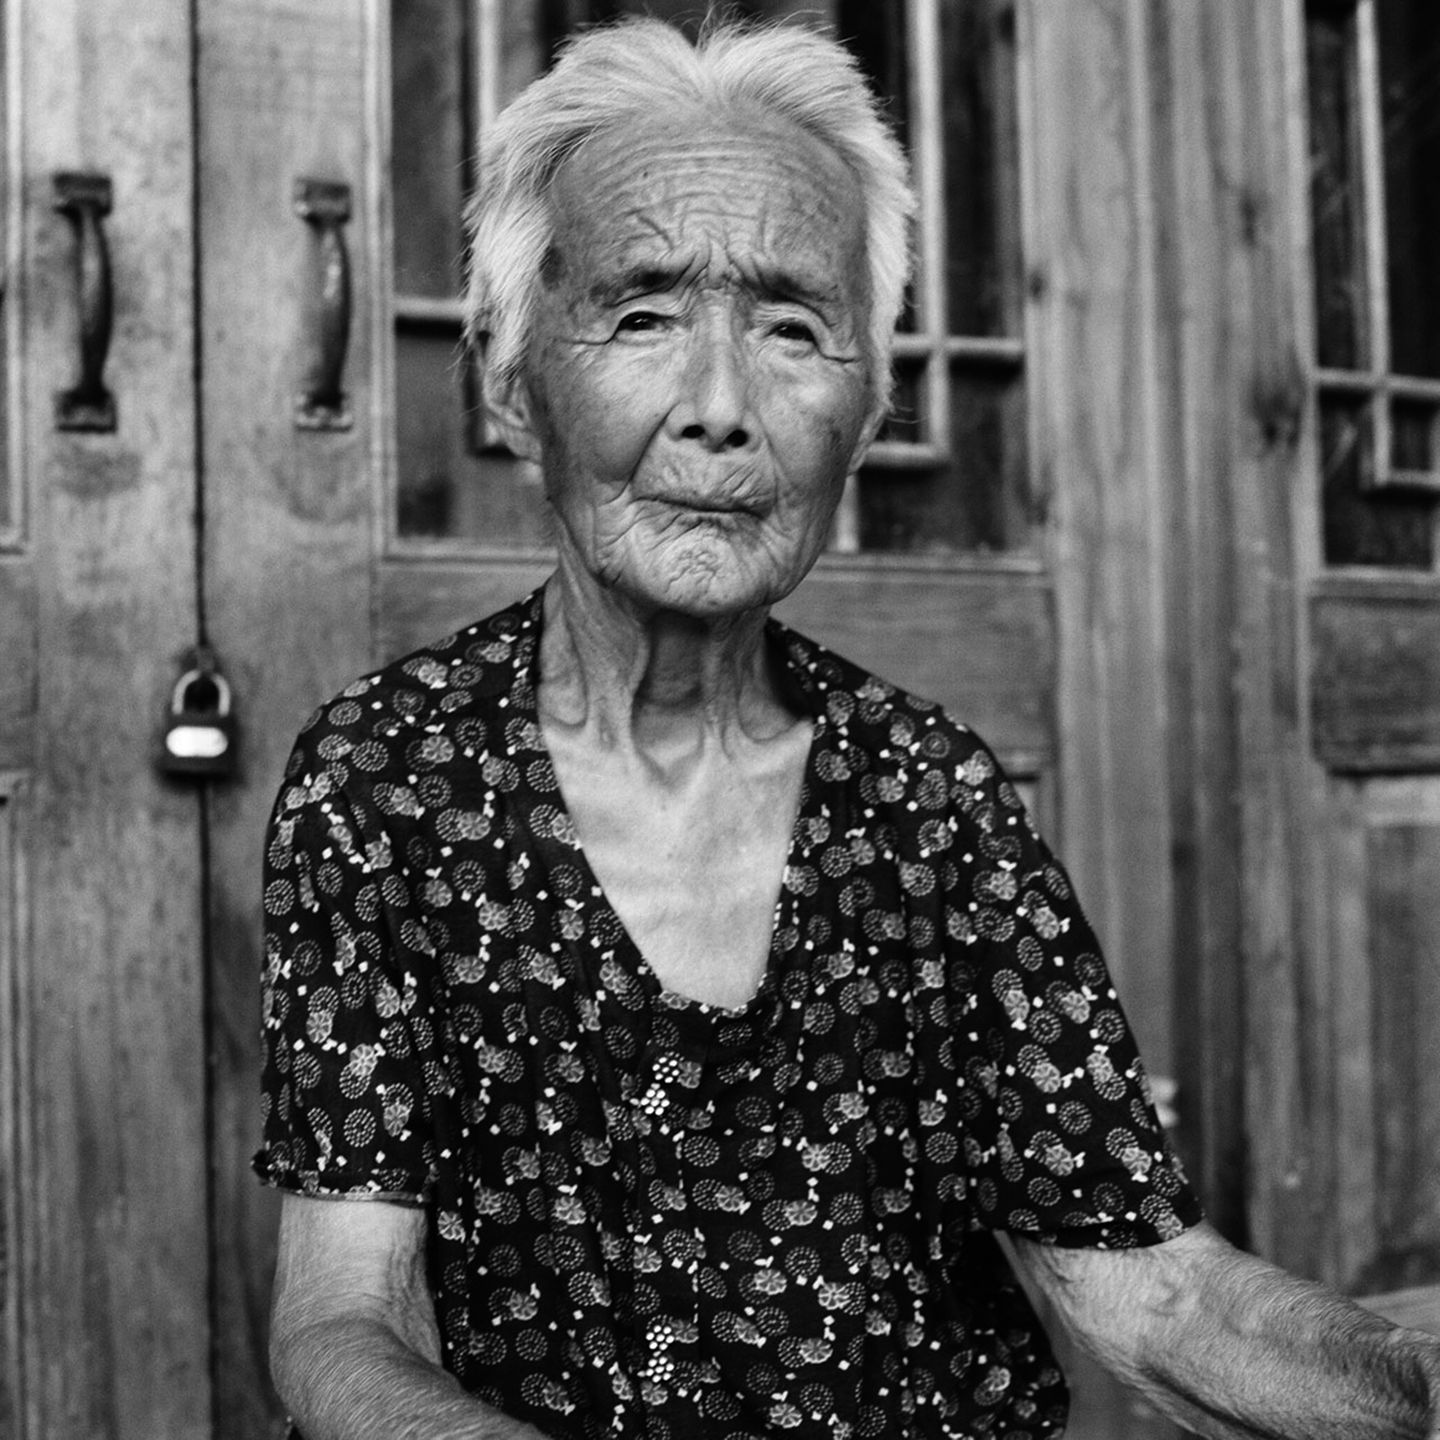 Zhao Hua Hong, 84